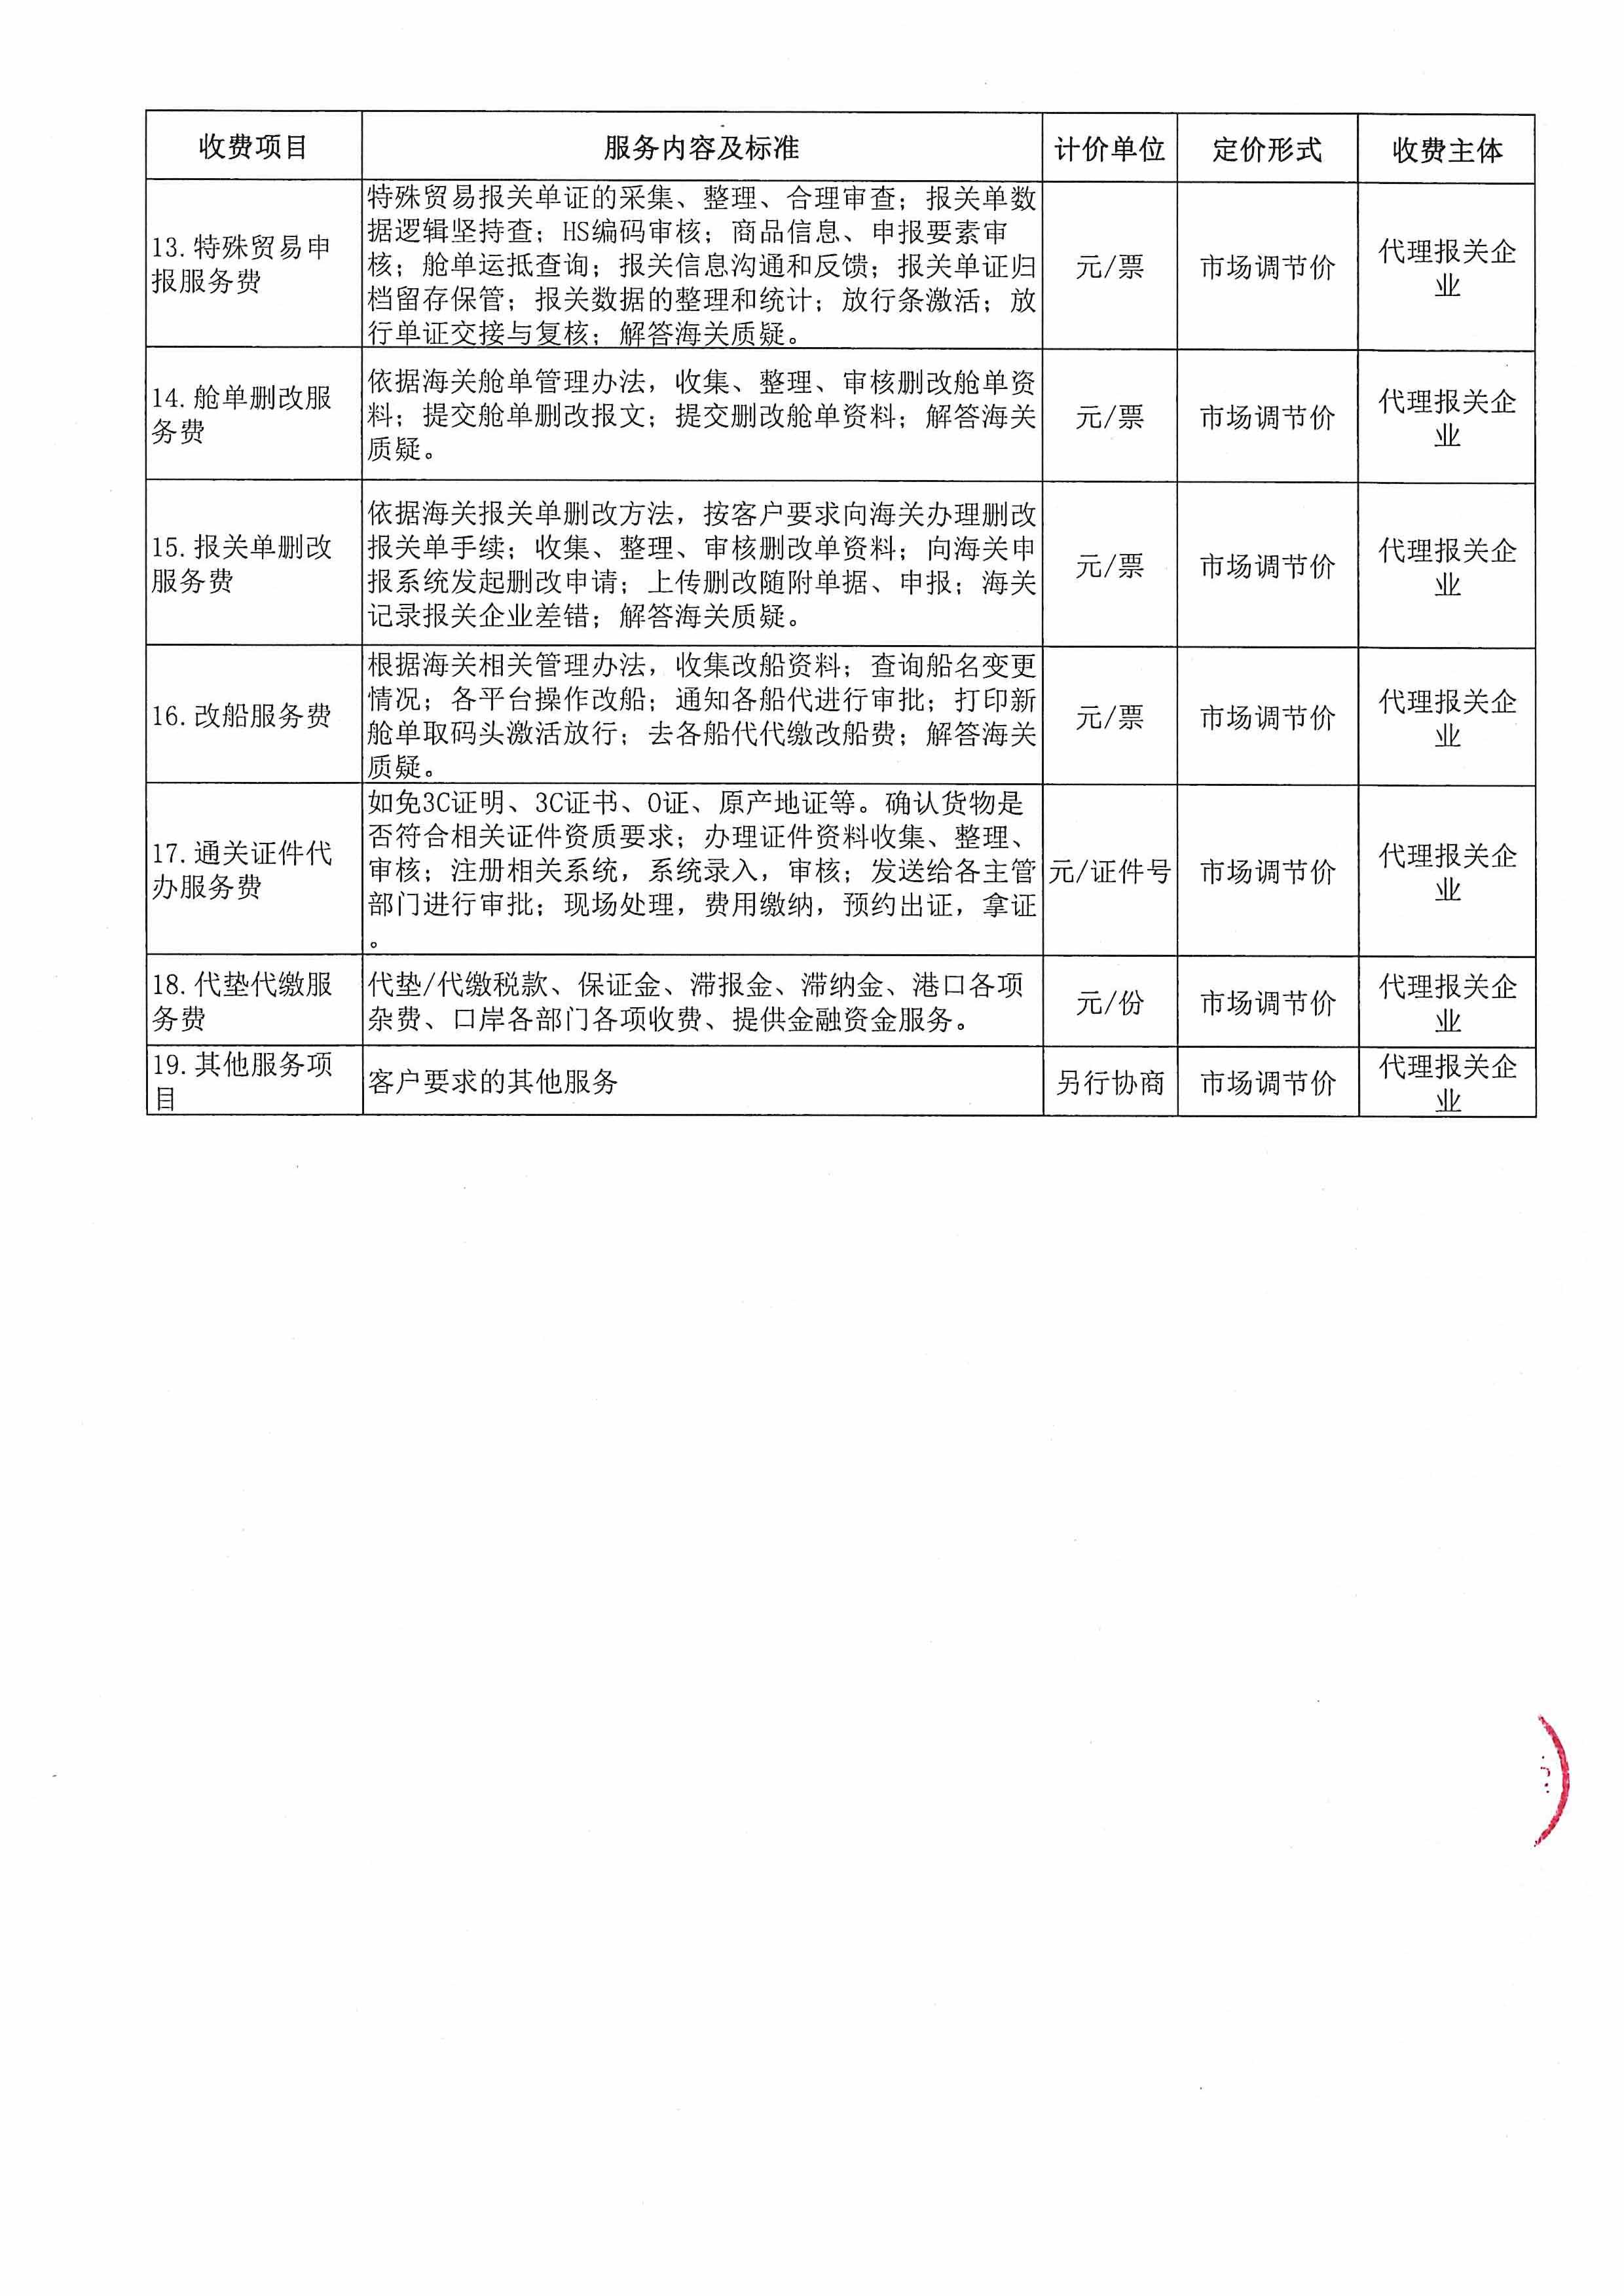 深圳亚联利成富港航服务有限公司收费目录清单_5.jpg